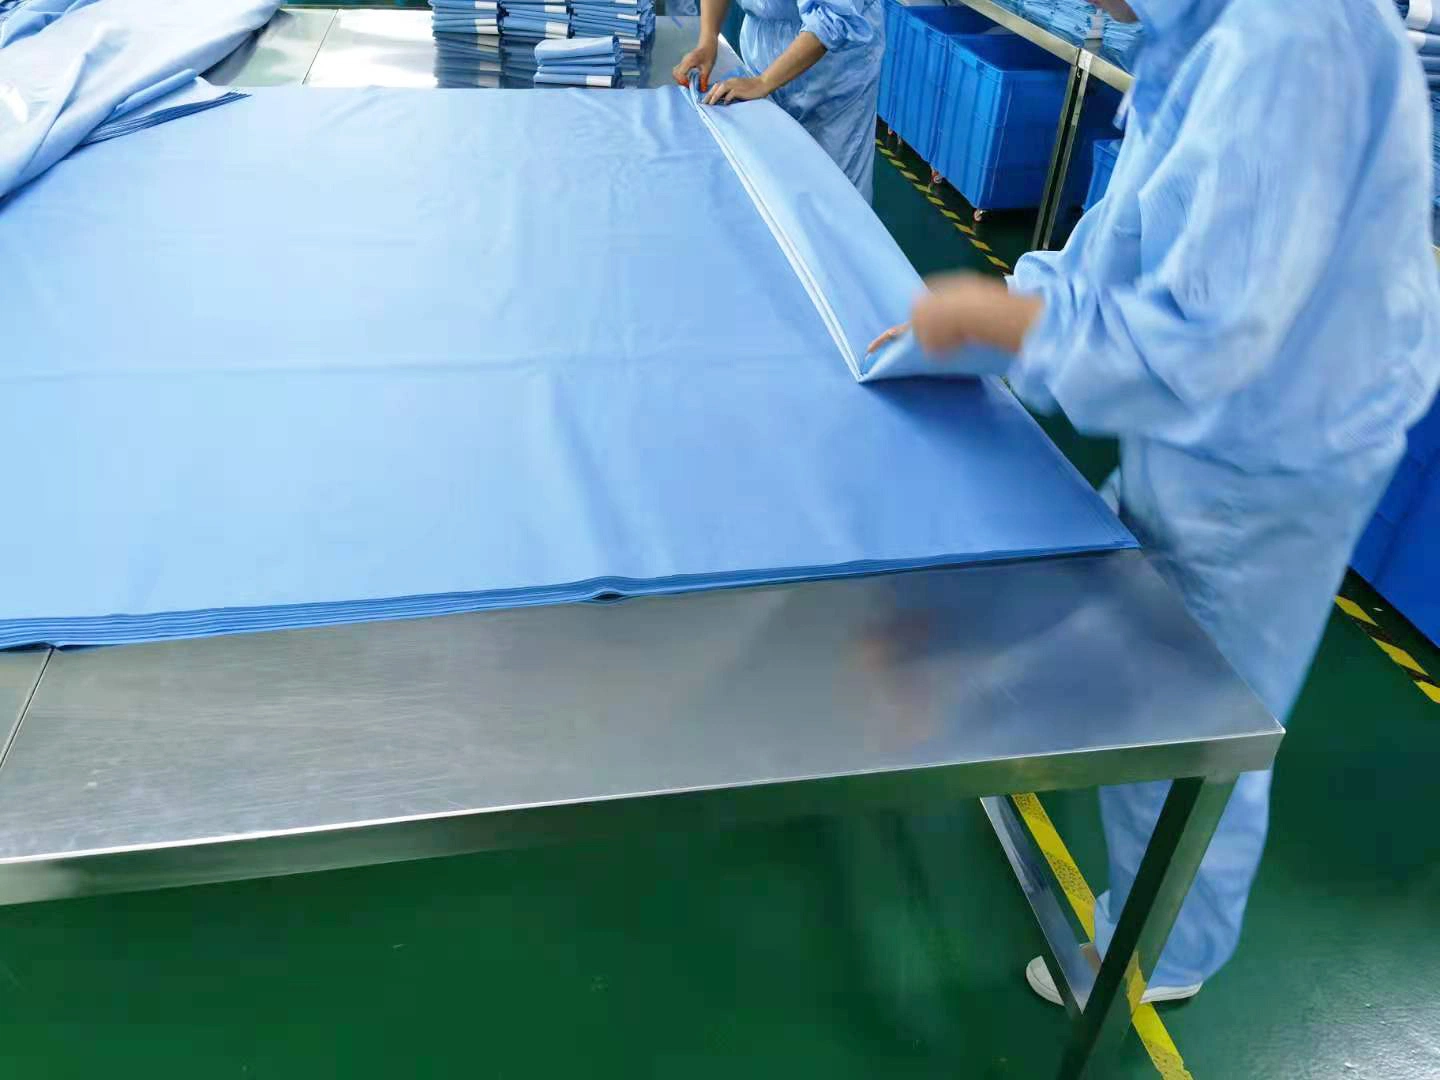 La fabrication de professionnels de la moelle épinière jetables SURGICAL DRAPE Pack mixte